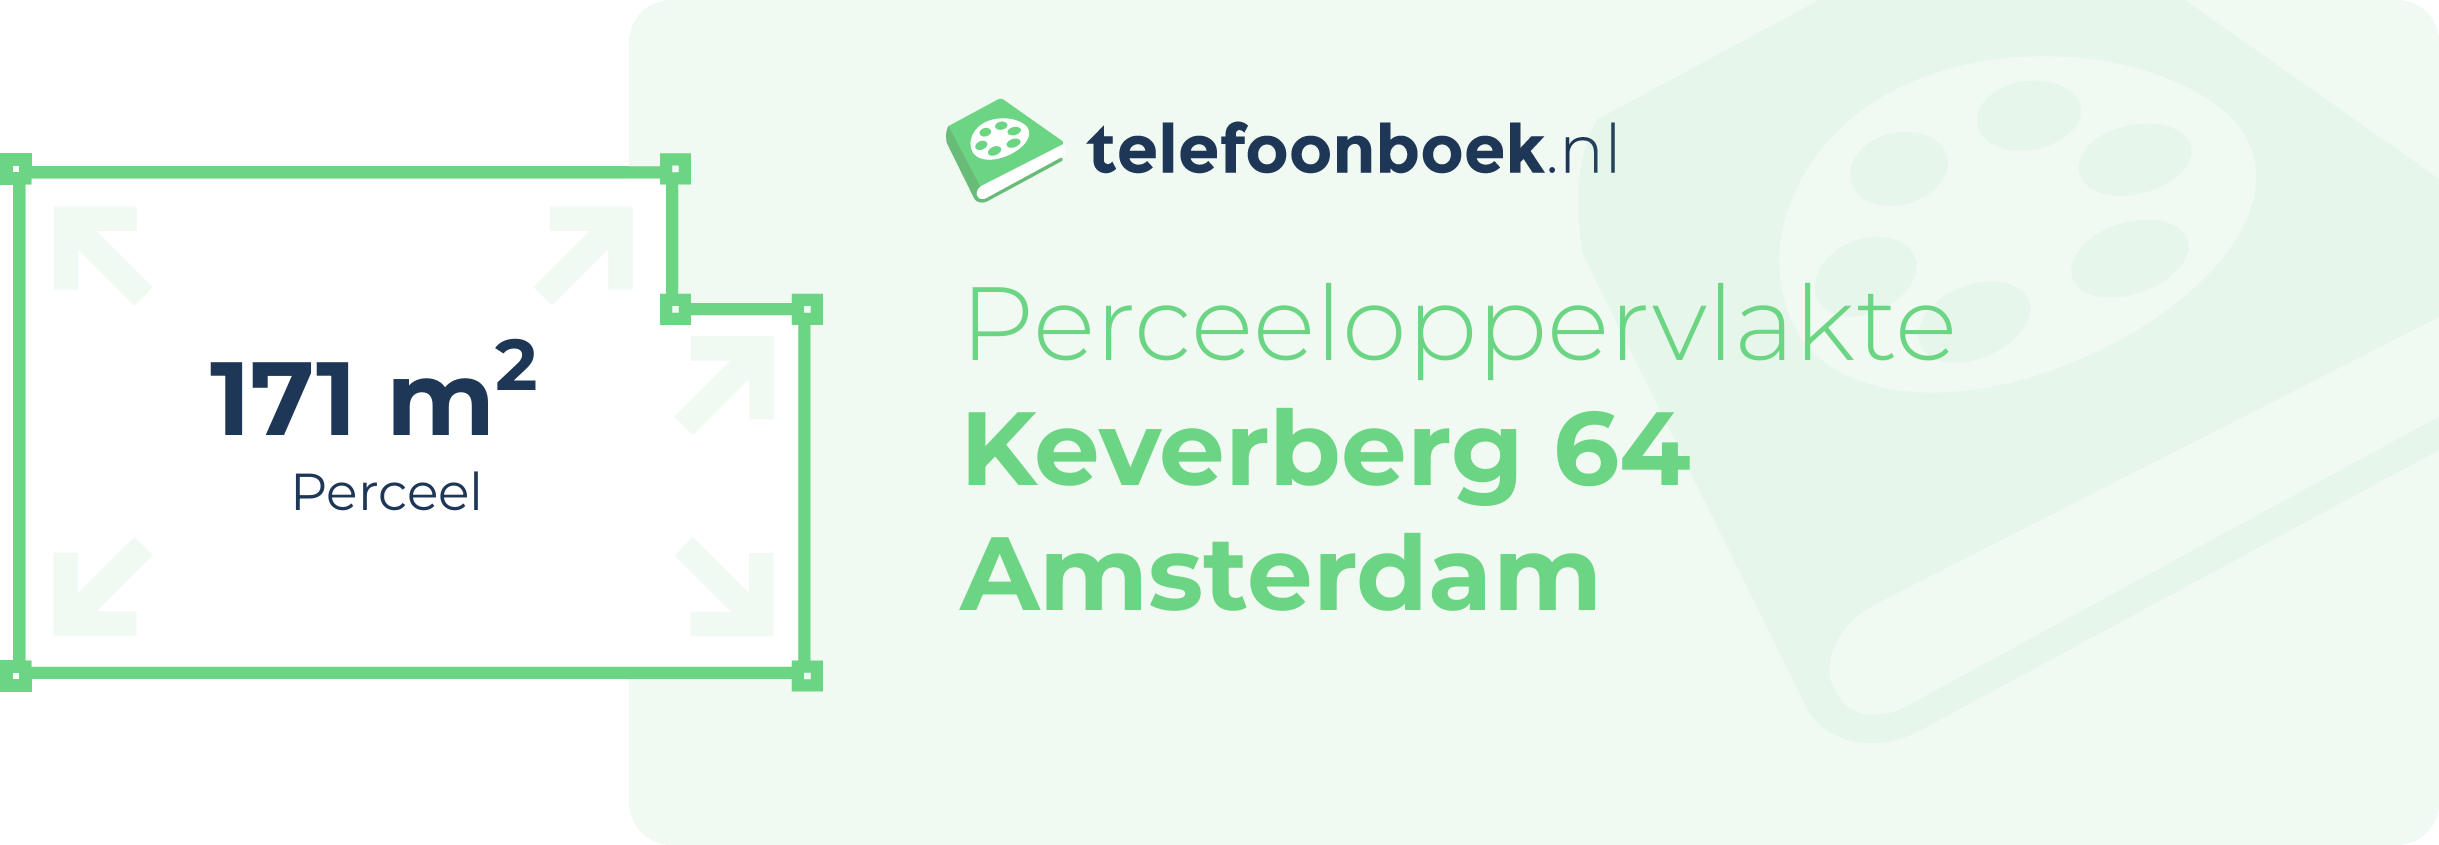 Perceeloppervlakte Keverberg 64 Amsterdam